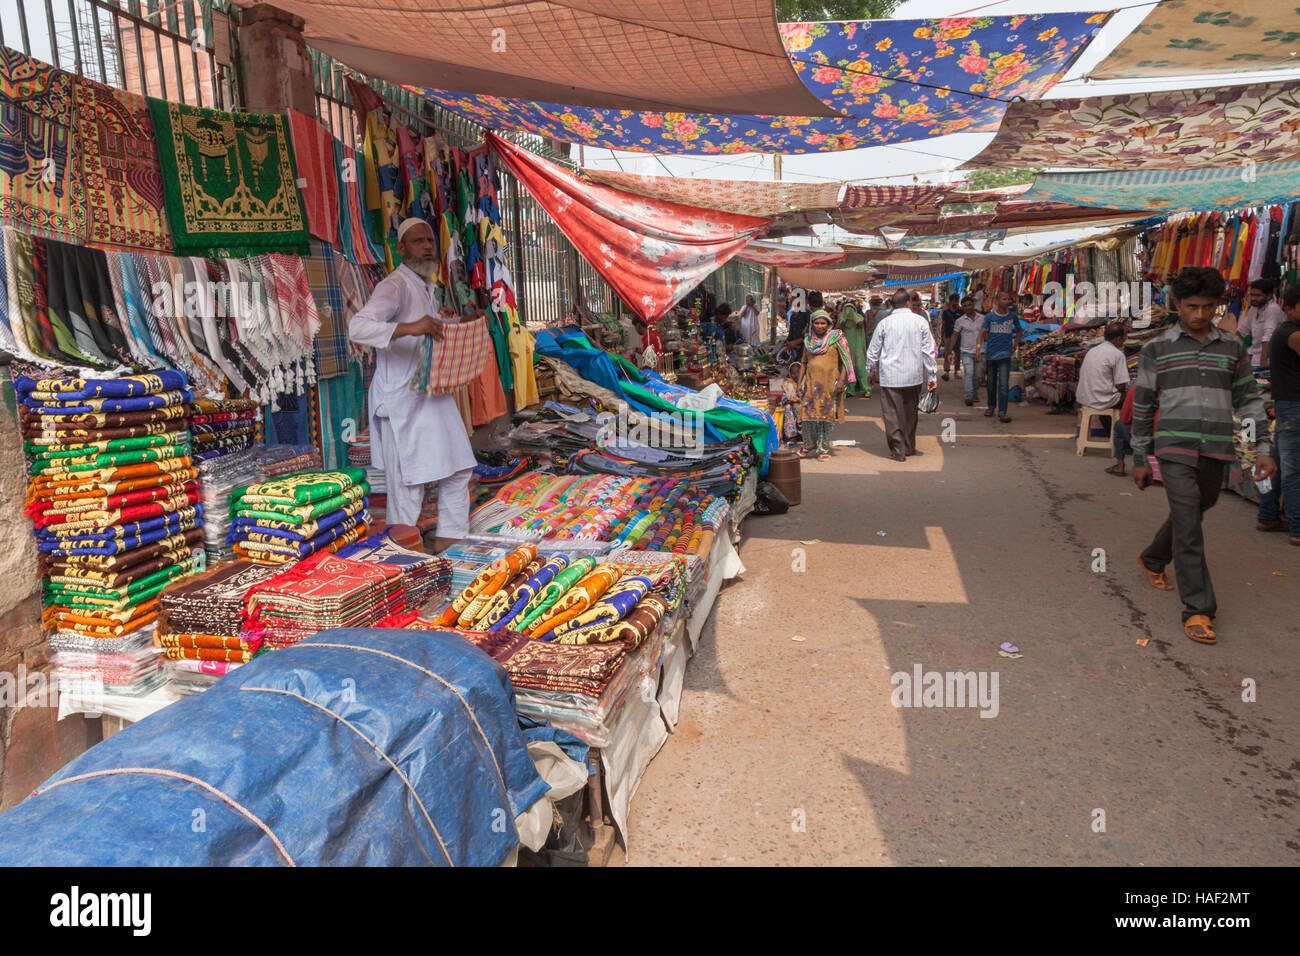 Outdoor-Markt-Szene, Alt-Delhi, Indien, mit Ständen, Verkauf von Textilien und Bekleidung Stockfoto